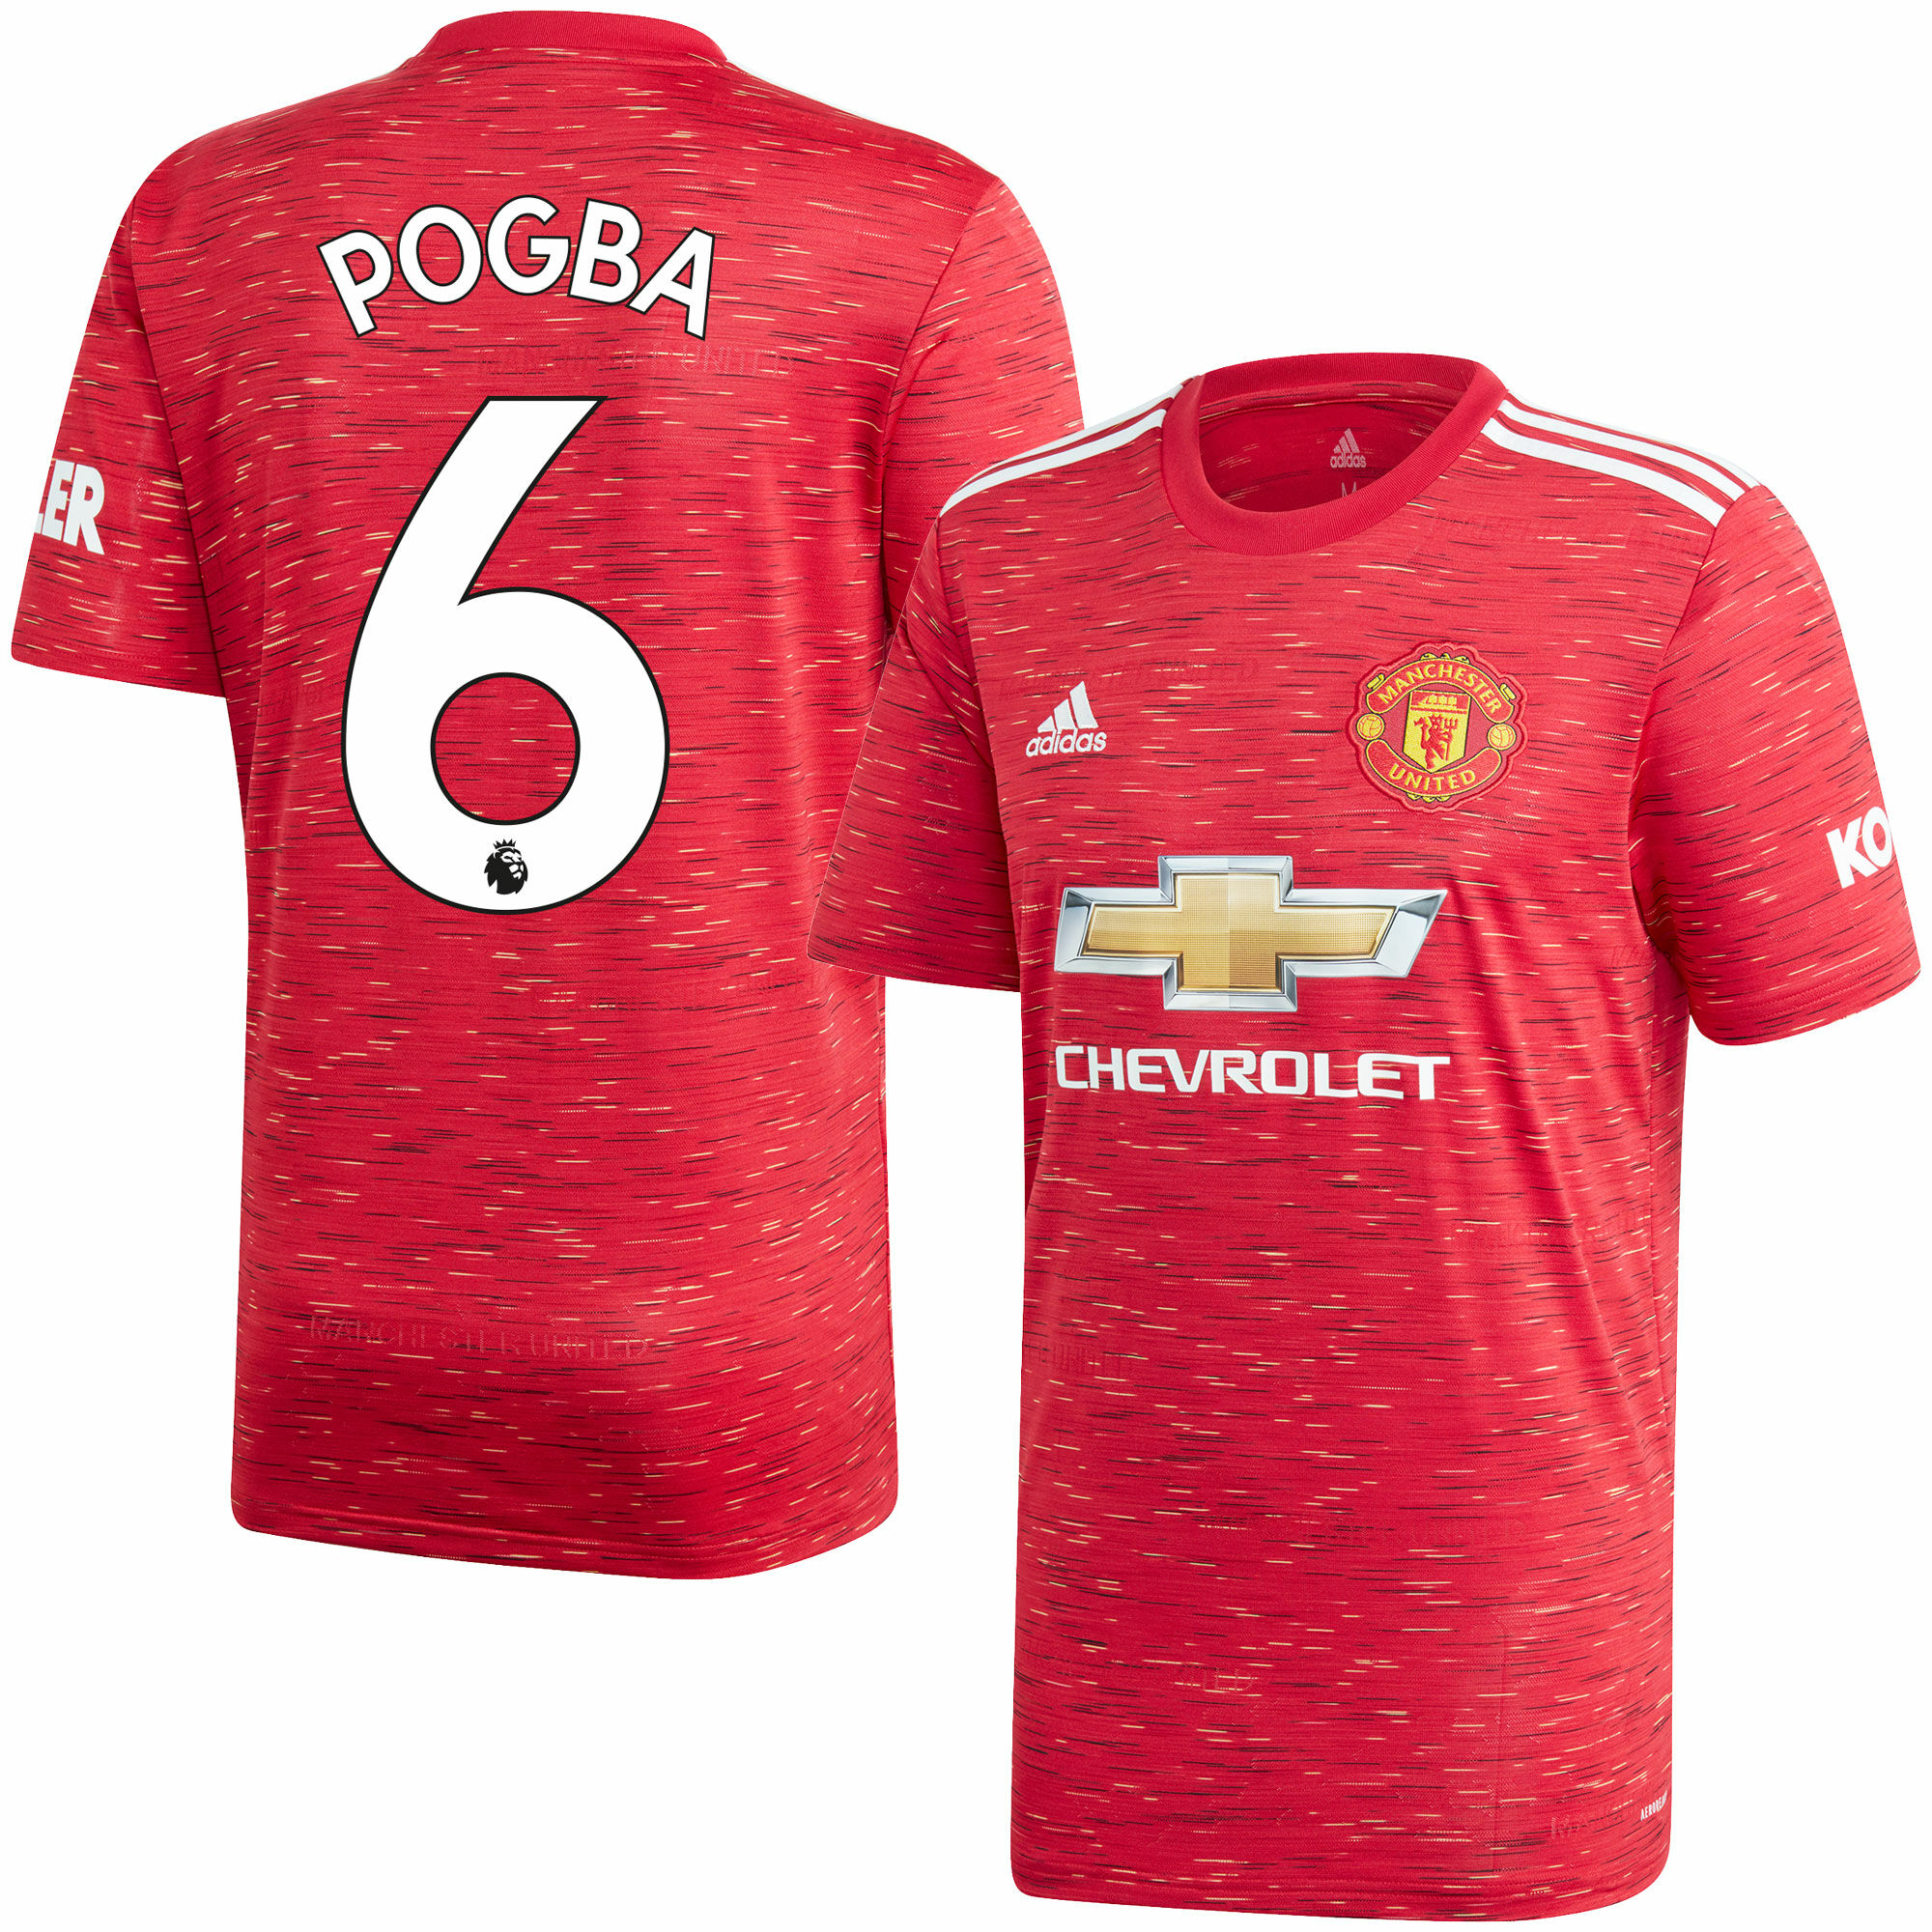 Manchester United - Dres fotbalový - sezóna 2020/21, číslo 6, domácí, Paul Pogba, červený